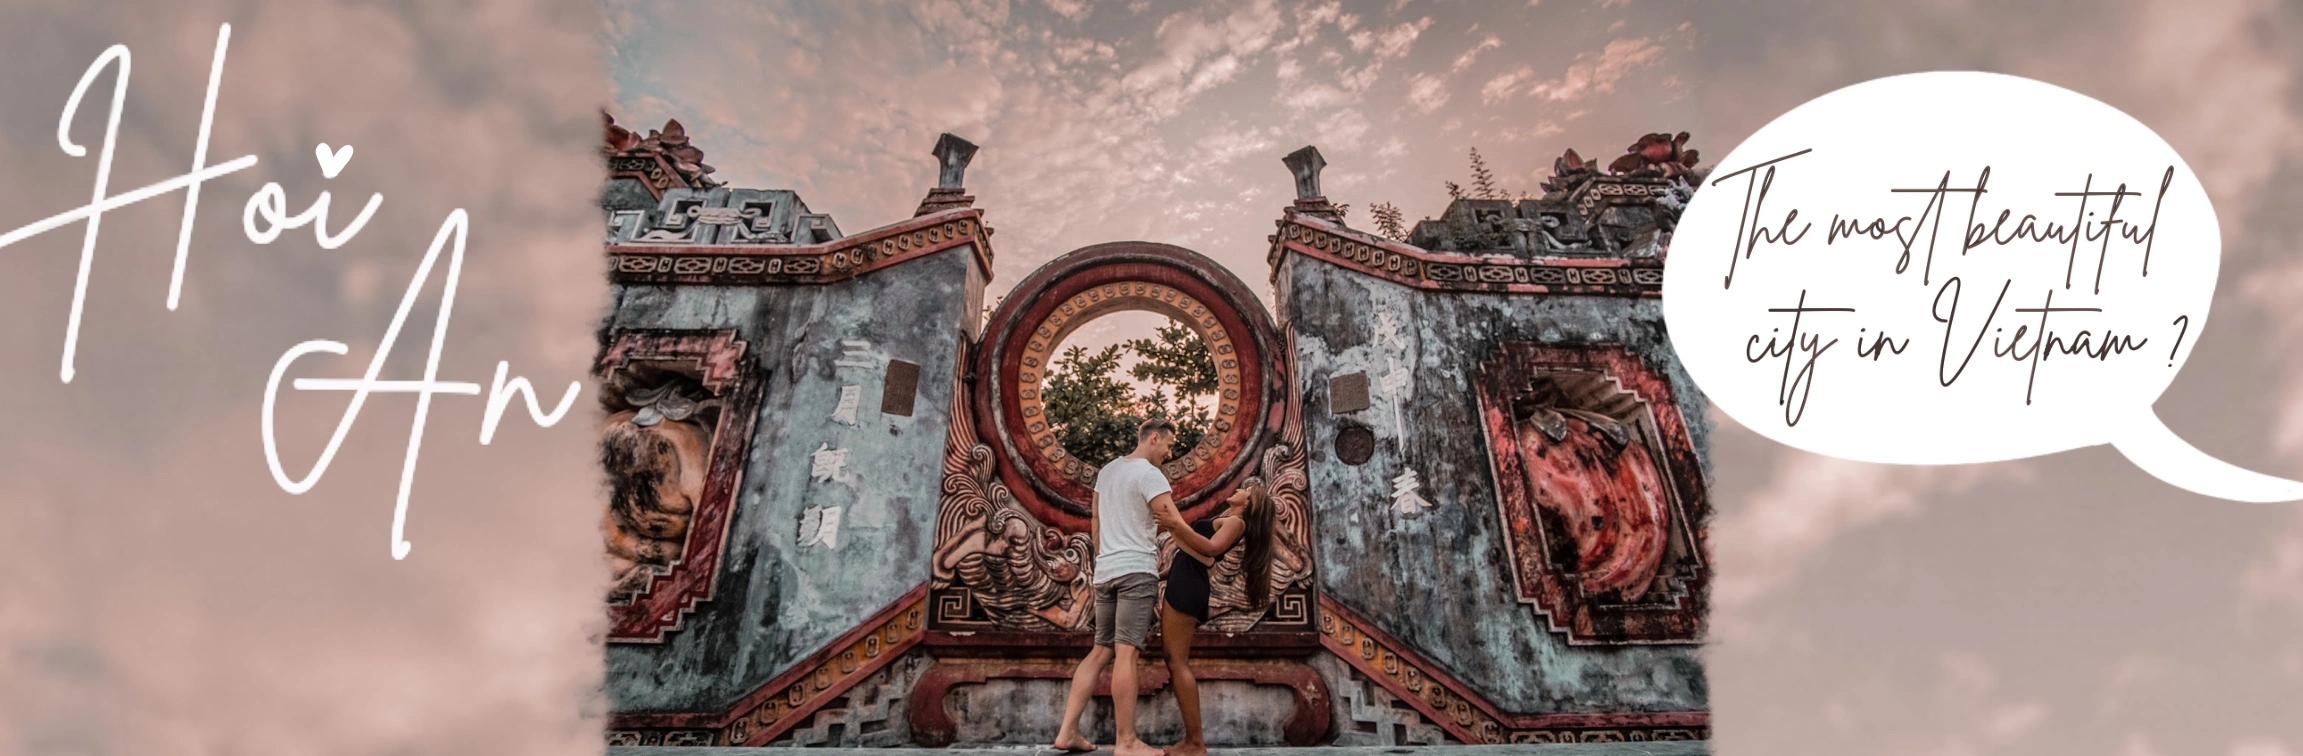 Hoi An – Die schönste Stadt in Vietnam?